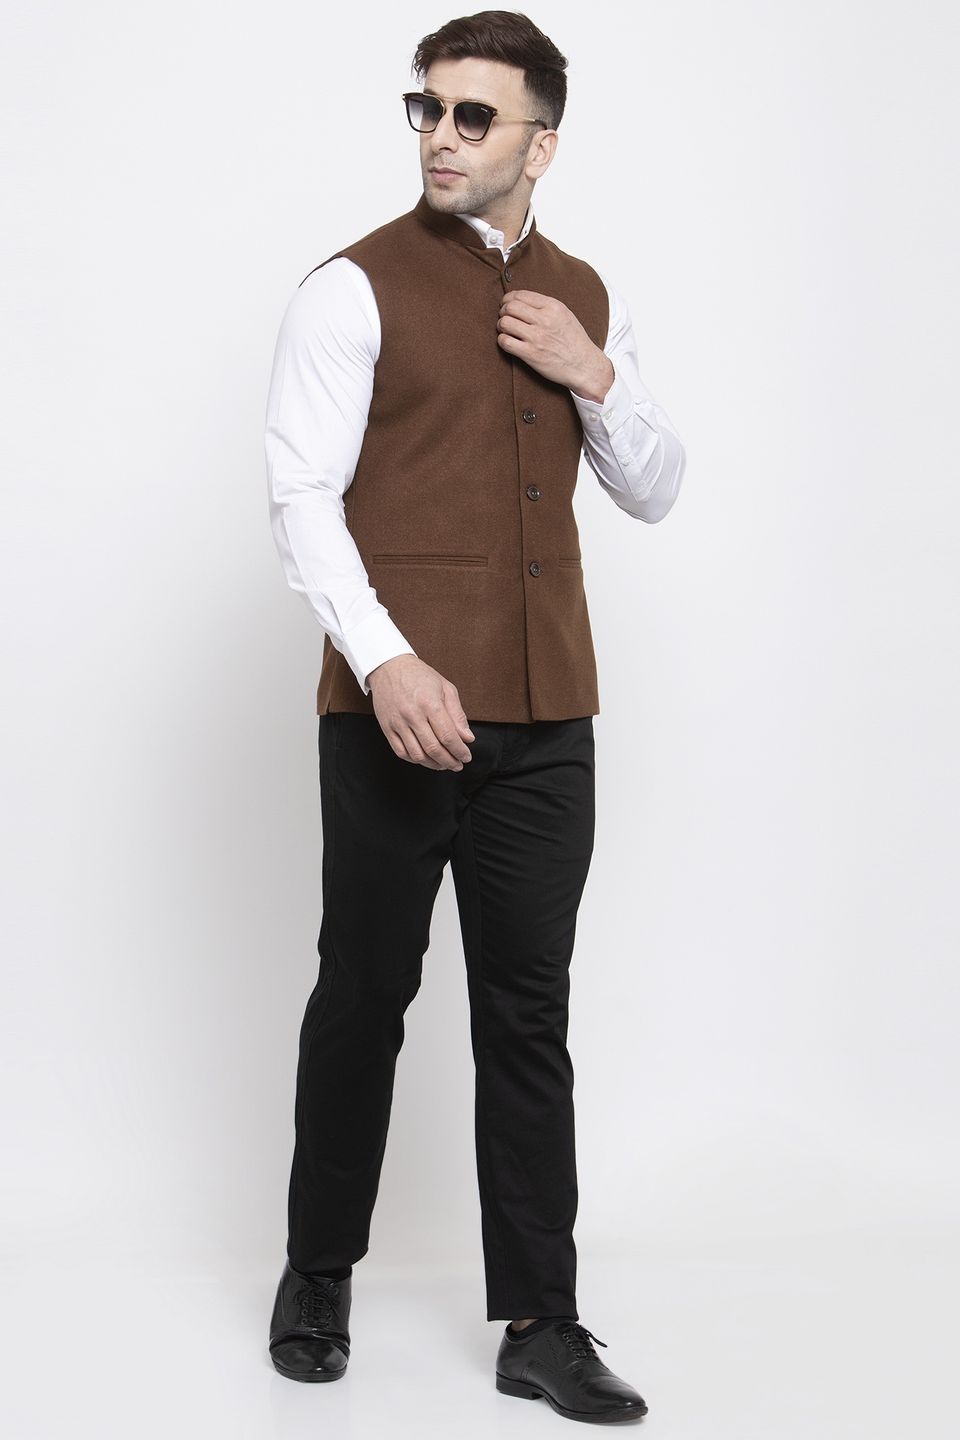 WINTAGE Men's Tweed Wool Festive and Casual Nehru Jacket Vest Waistcoat : Brown